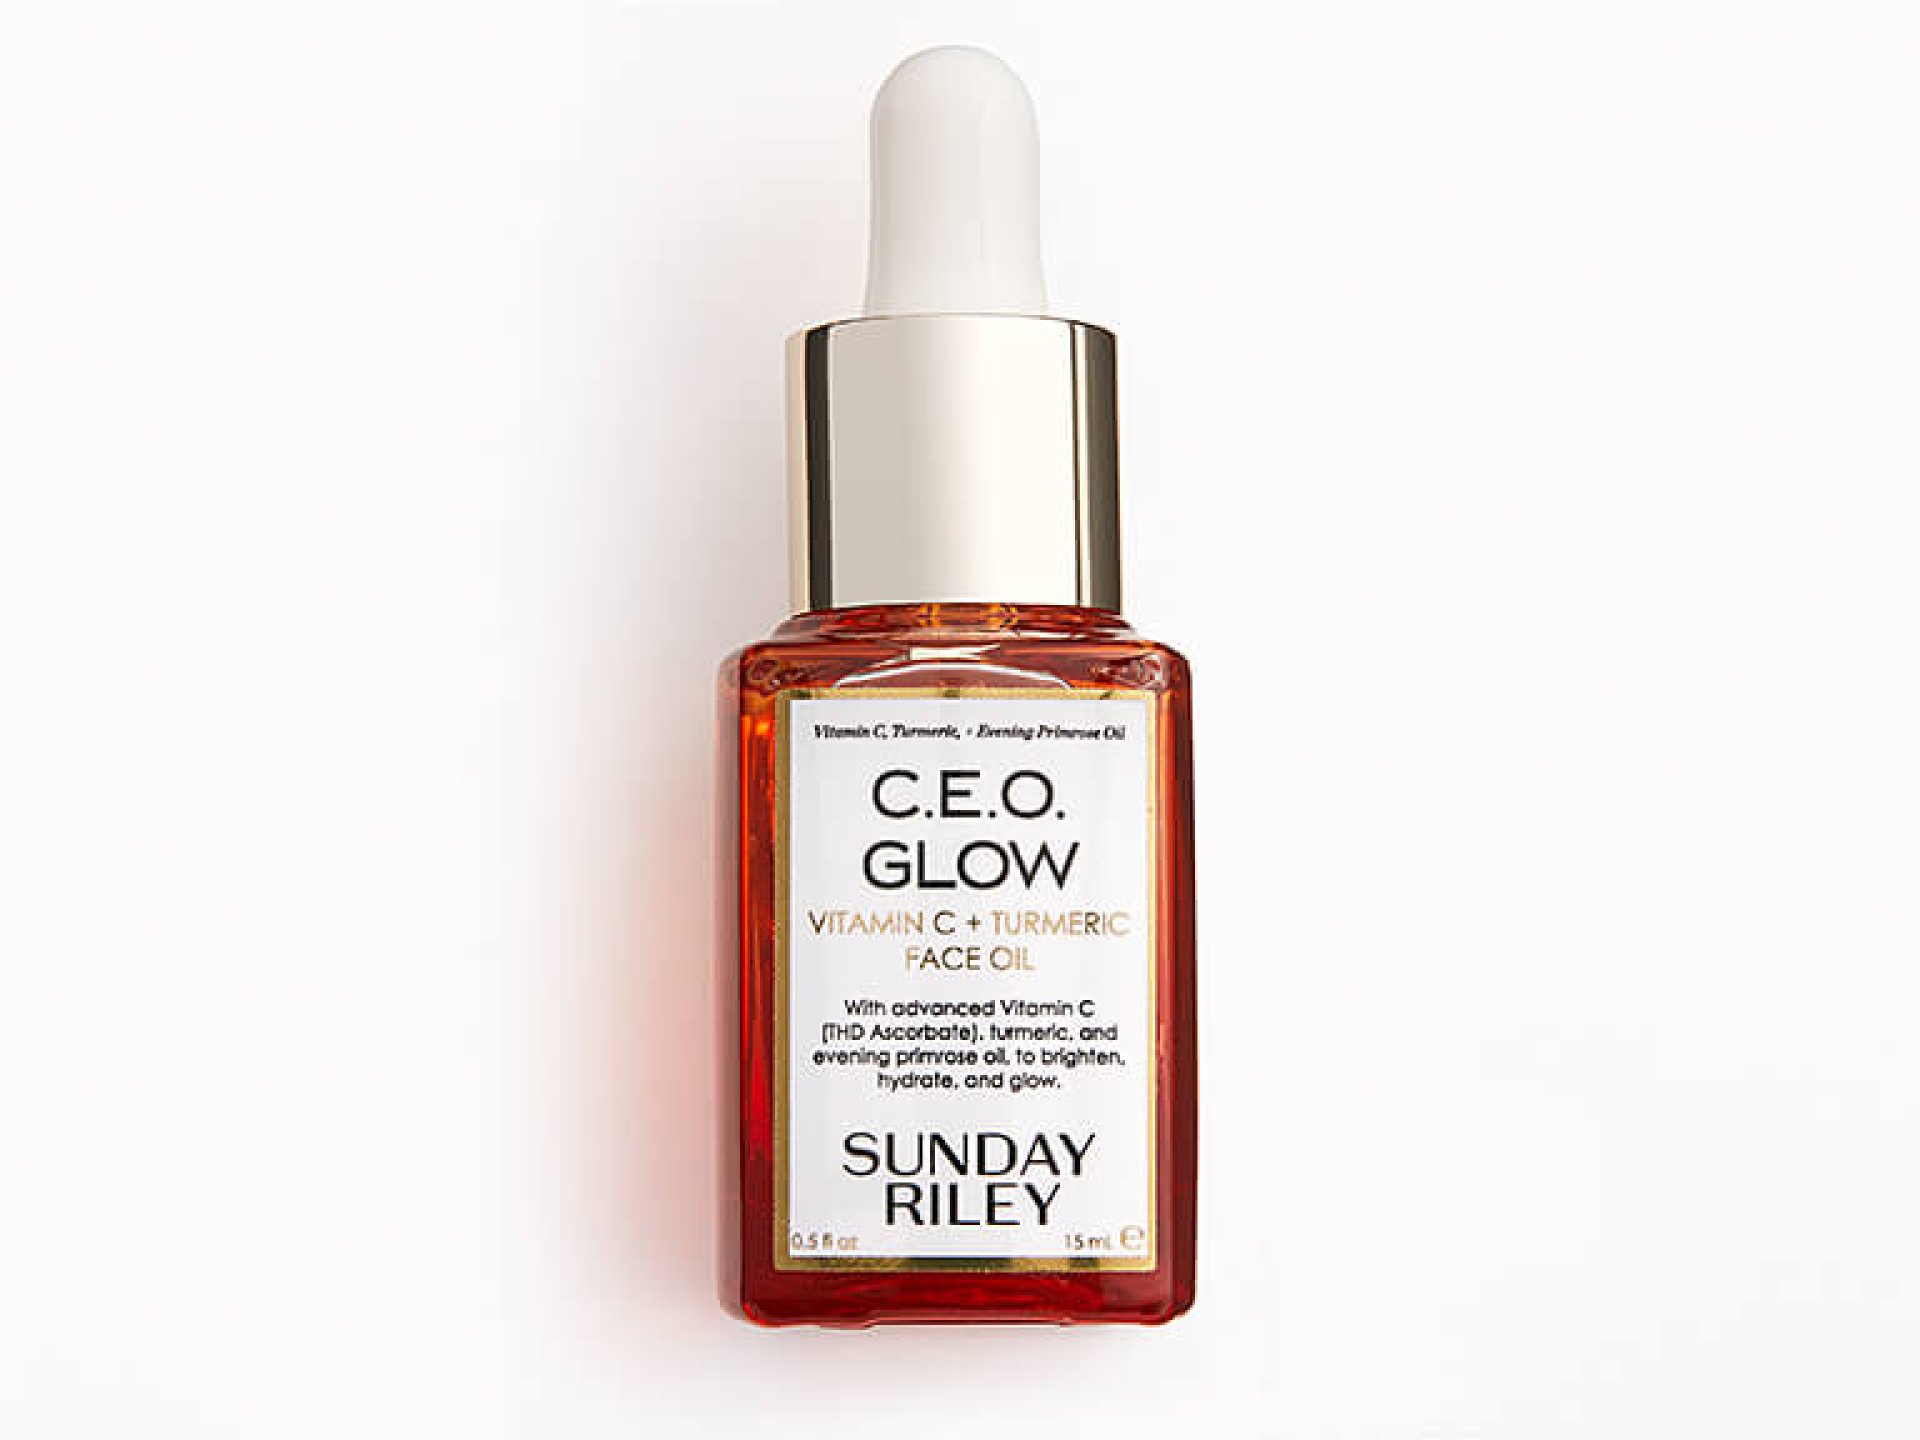 SUNDAY RILEY C.E.O Glow Vitamin C + Turmeric Face Oil